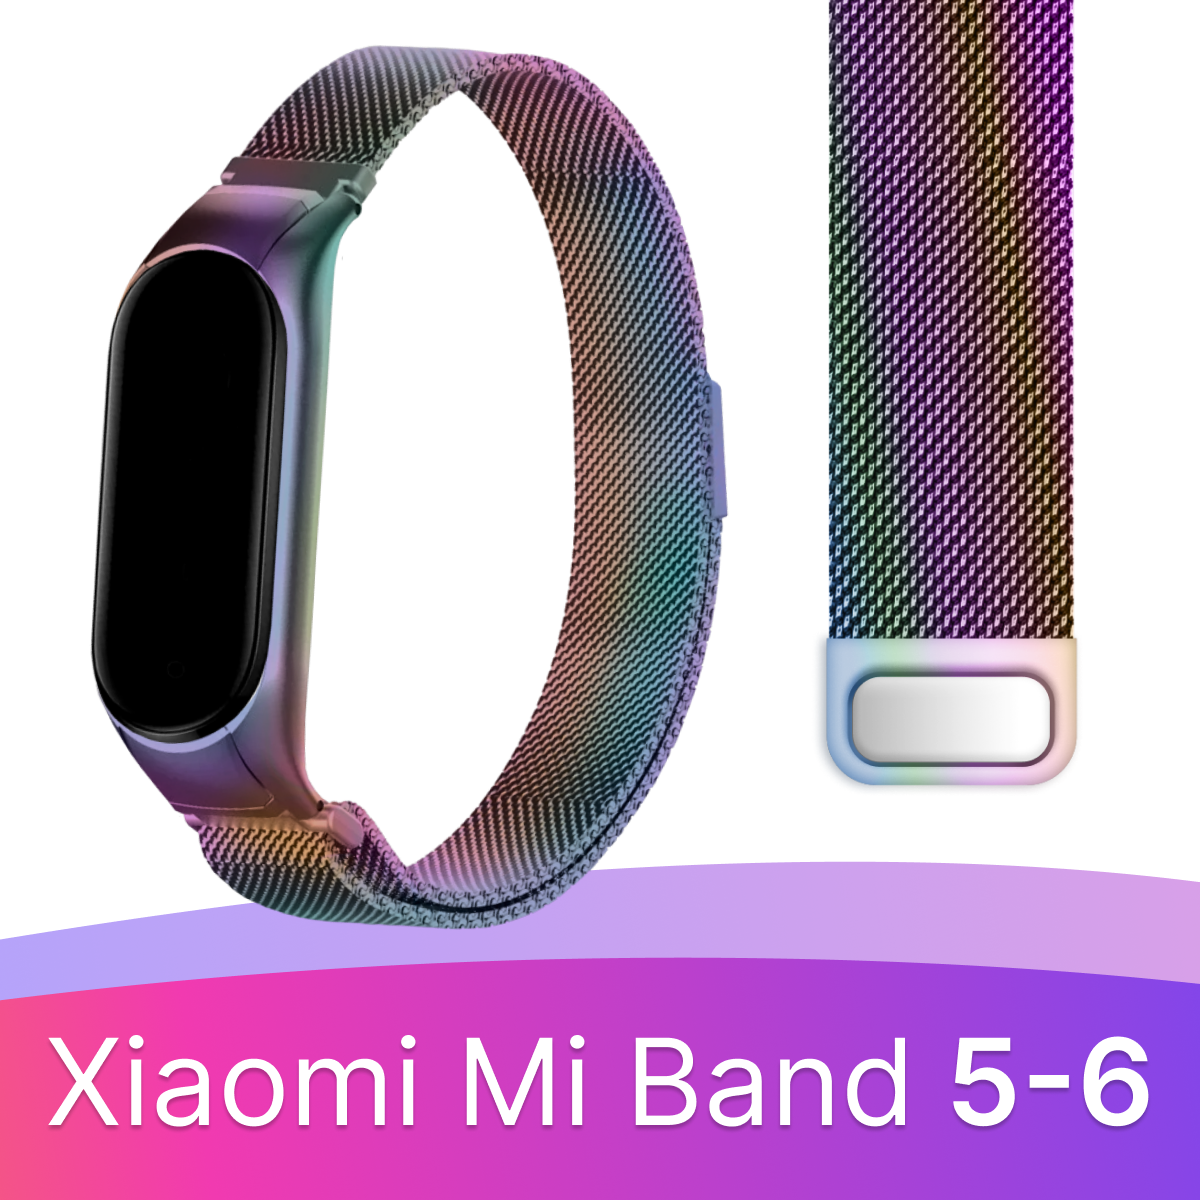 Металлический ремешок миланская петля для фитнес-трекера Xiaomi Mi Band 5 и 6 / Браслет из нержавеющей стали на смарт часы Сяоми Ми Бэнд 5 и 6 / Разноцветный